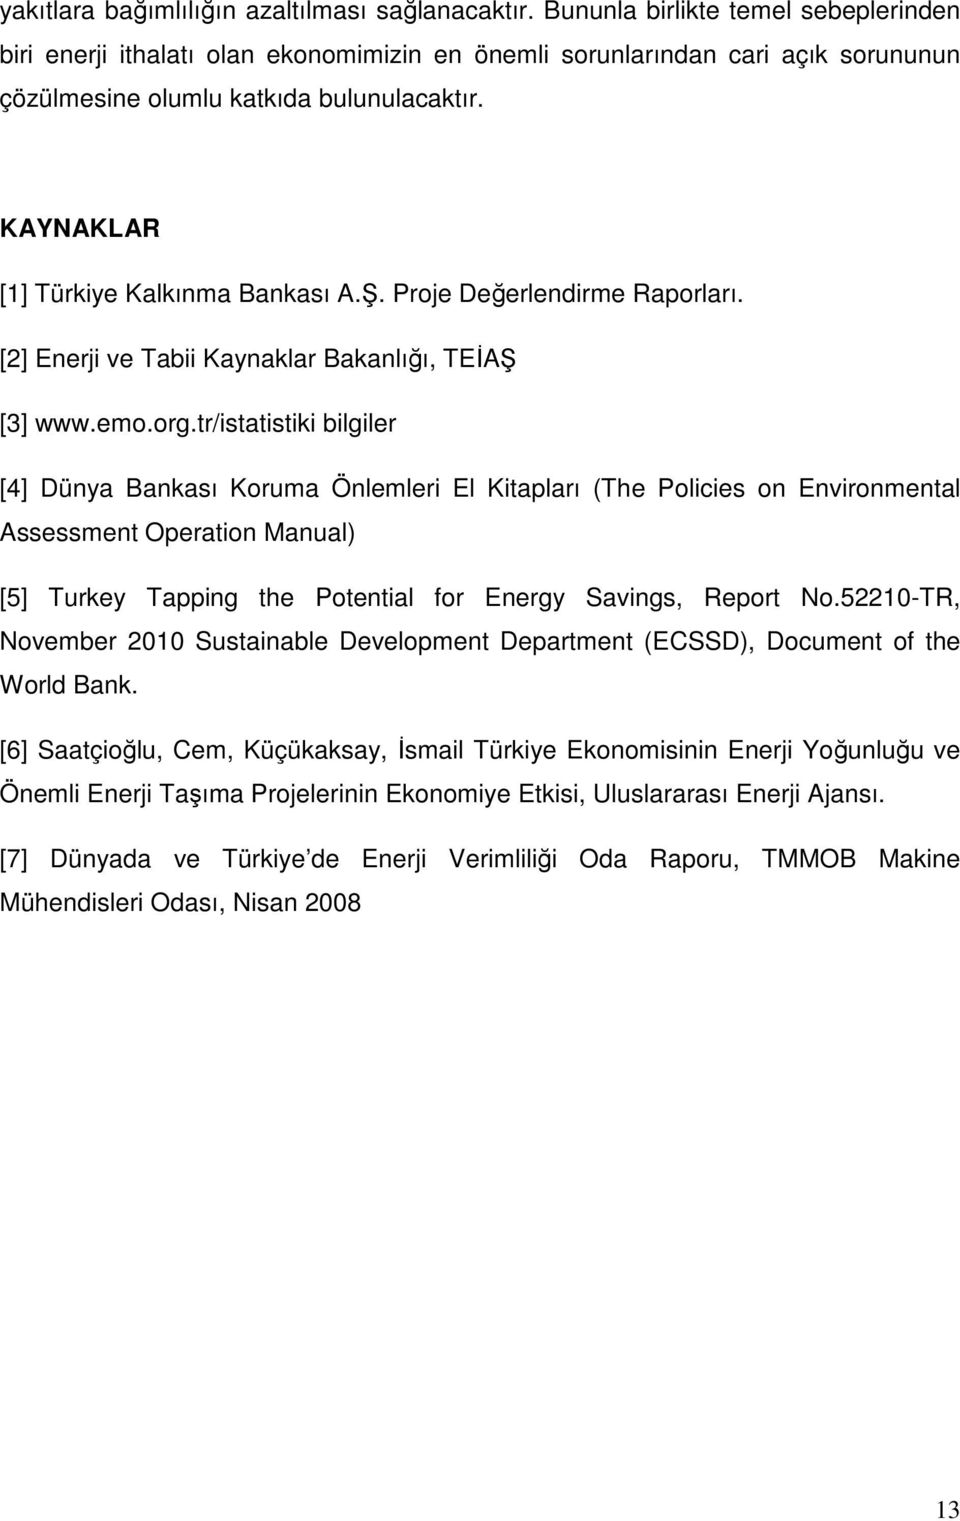 KAYNAKLAR [1] Türkiye Kalkınma Bankası A.Ş. Proje Değerlendirme Raporları. [2] Enerji ve Tabii Kaynaklar Bakanlığı, TEİAŞ [3] www.emo.org.